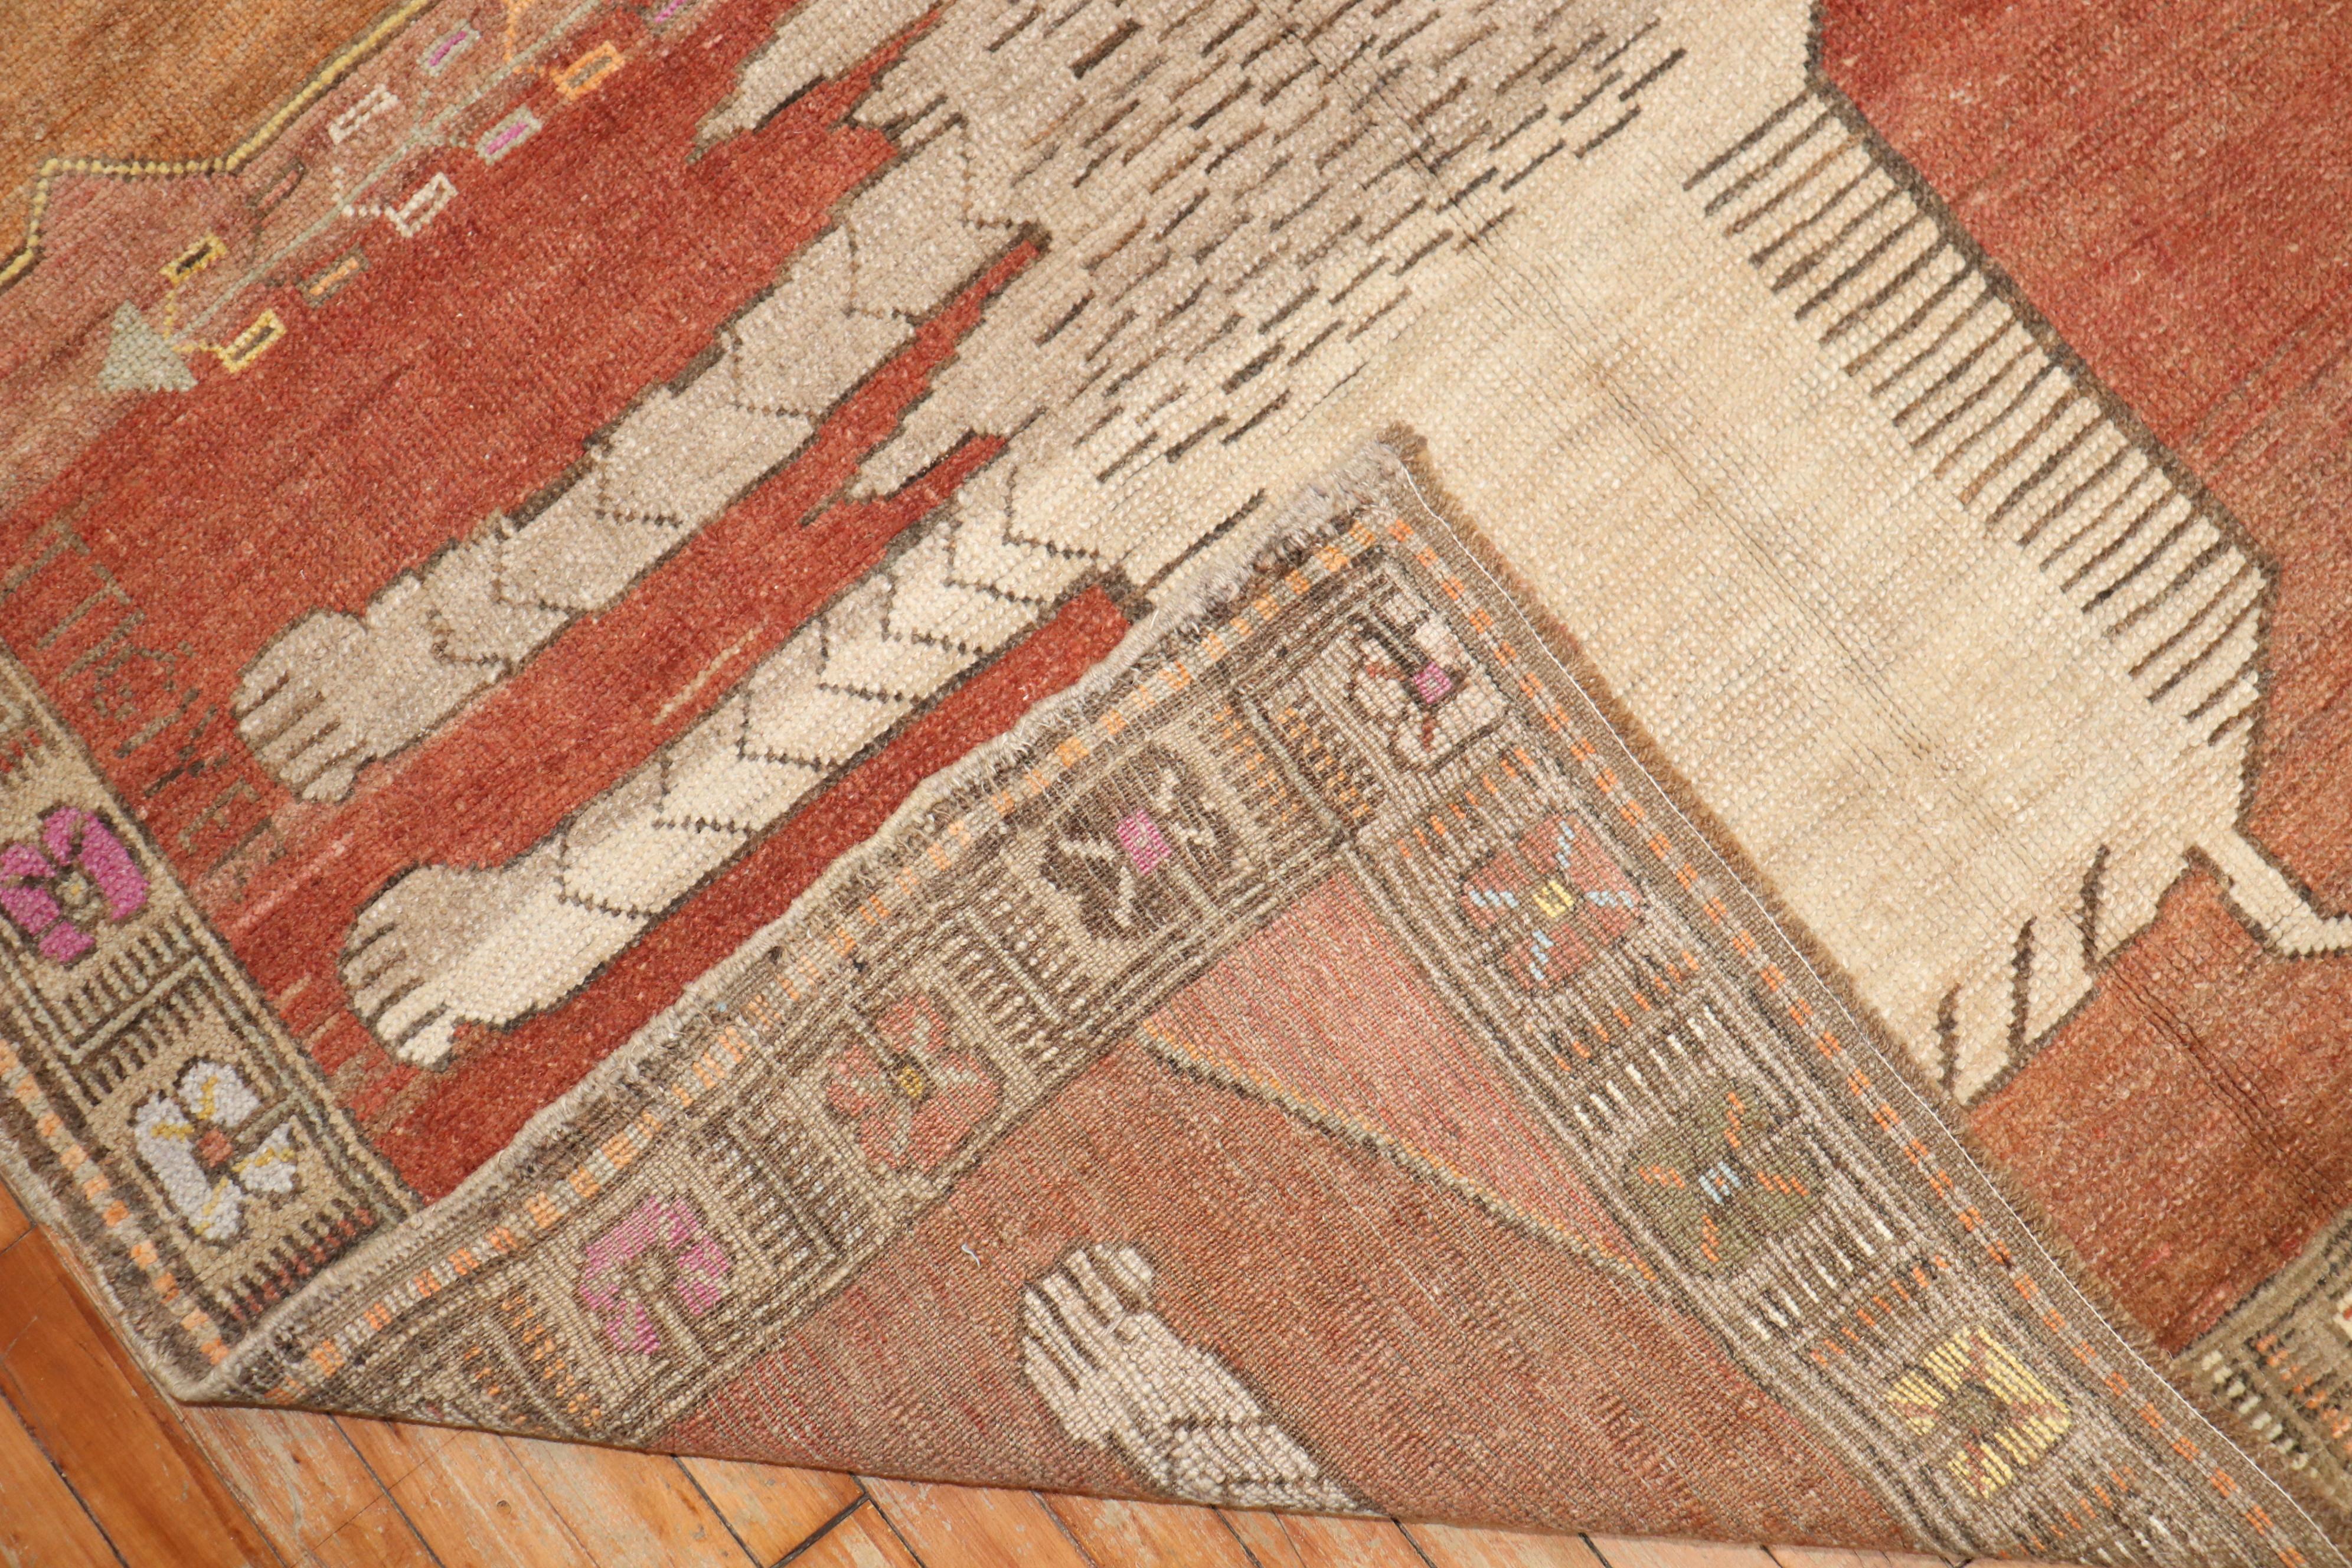 Wunderschöner türkisch-anatolischer Teppich in Akzentgröße, auf dem ein Paar großer Löwen zwischen einem berüchtigten türkischen Feldherrn abgebildet ist. Sein Name ist auf dem Teppich eingraviert. Die Inschriften auf dem Teppich lassen vermuten,